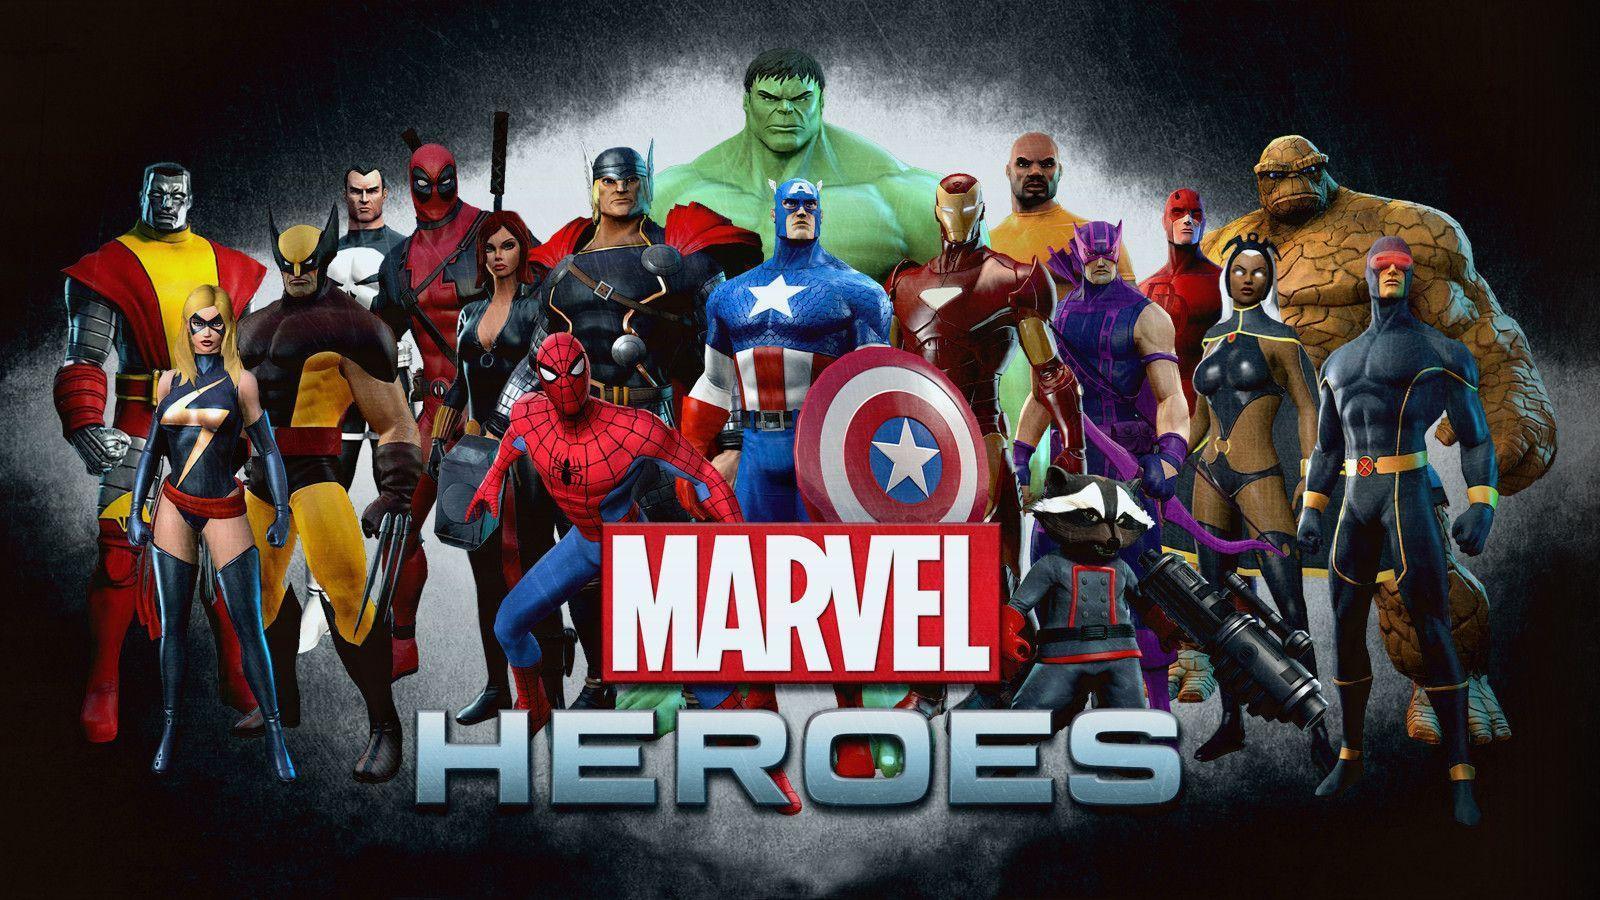 Marvel Heroes Wallpaper (UPDATED w/ STAR LORD) Heroes 2015